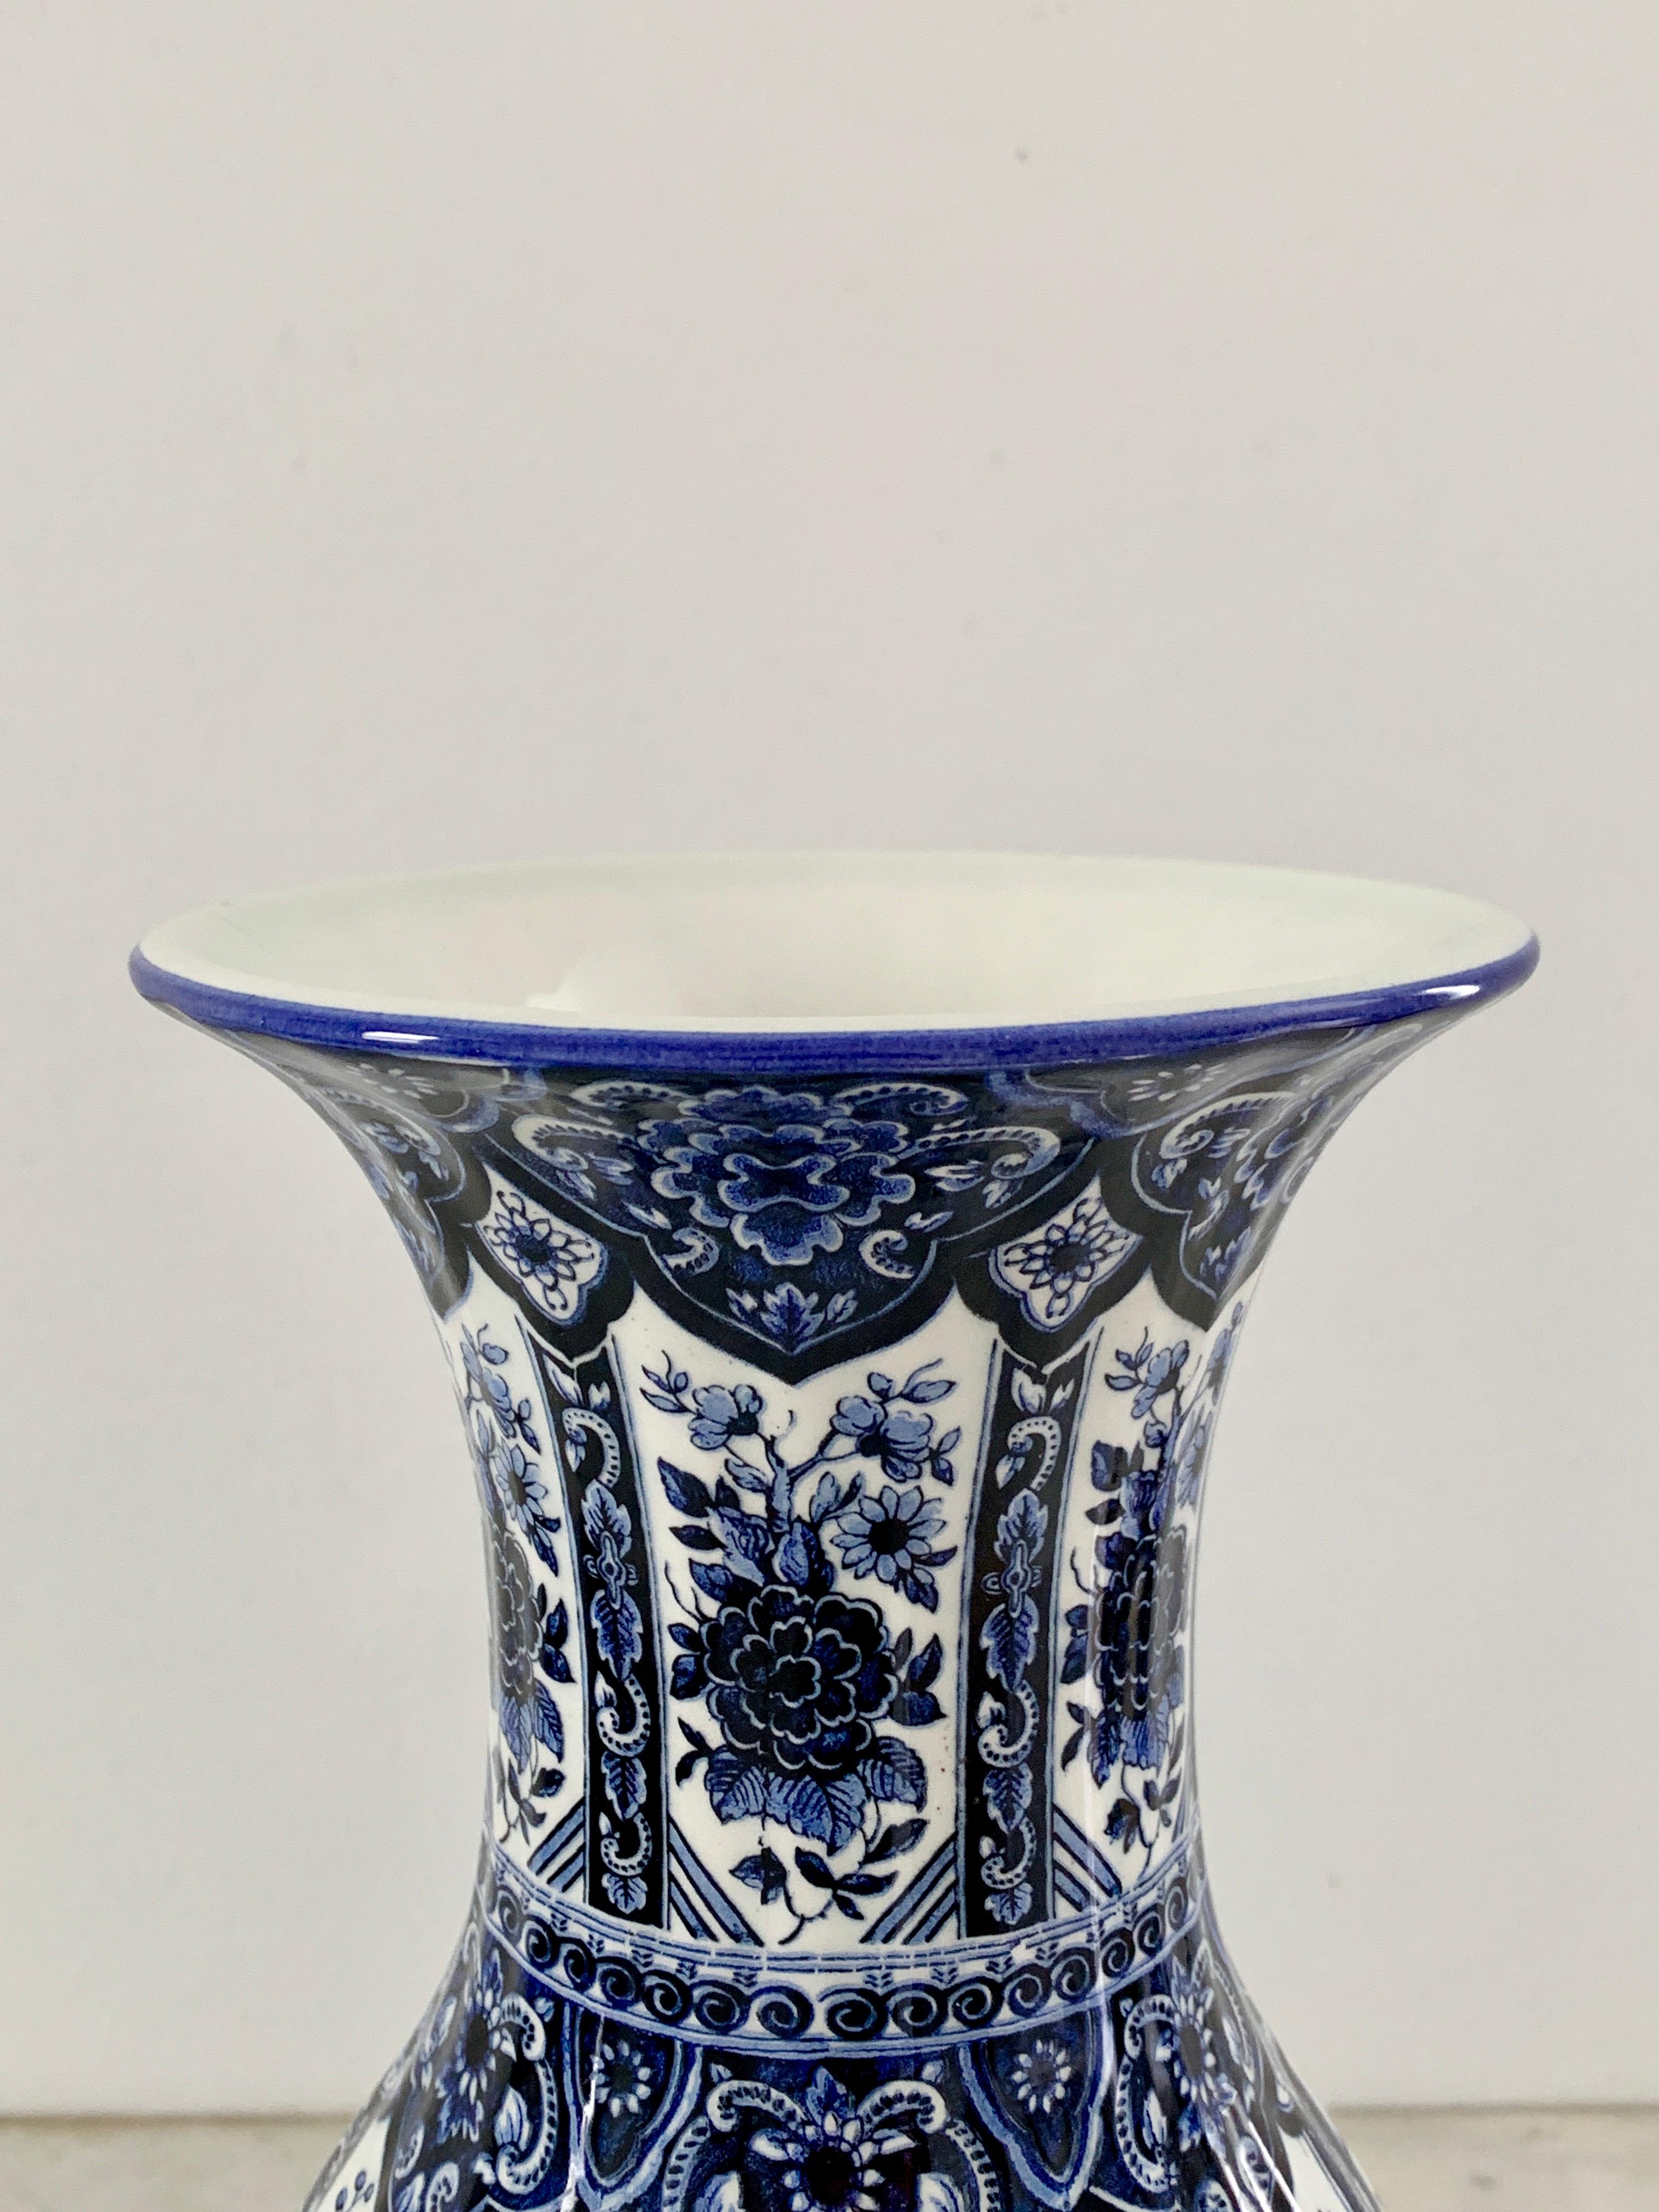 Magnifique vase en porcelaine bleue et blanche de style Delft Chinoiserie

Par Ardalt, Blue Delfia

Italie, Milieu du 20ème siècle

Mesures : 5 